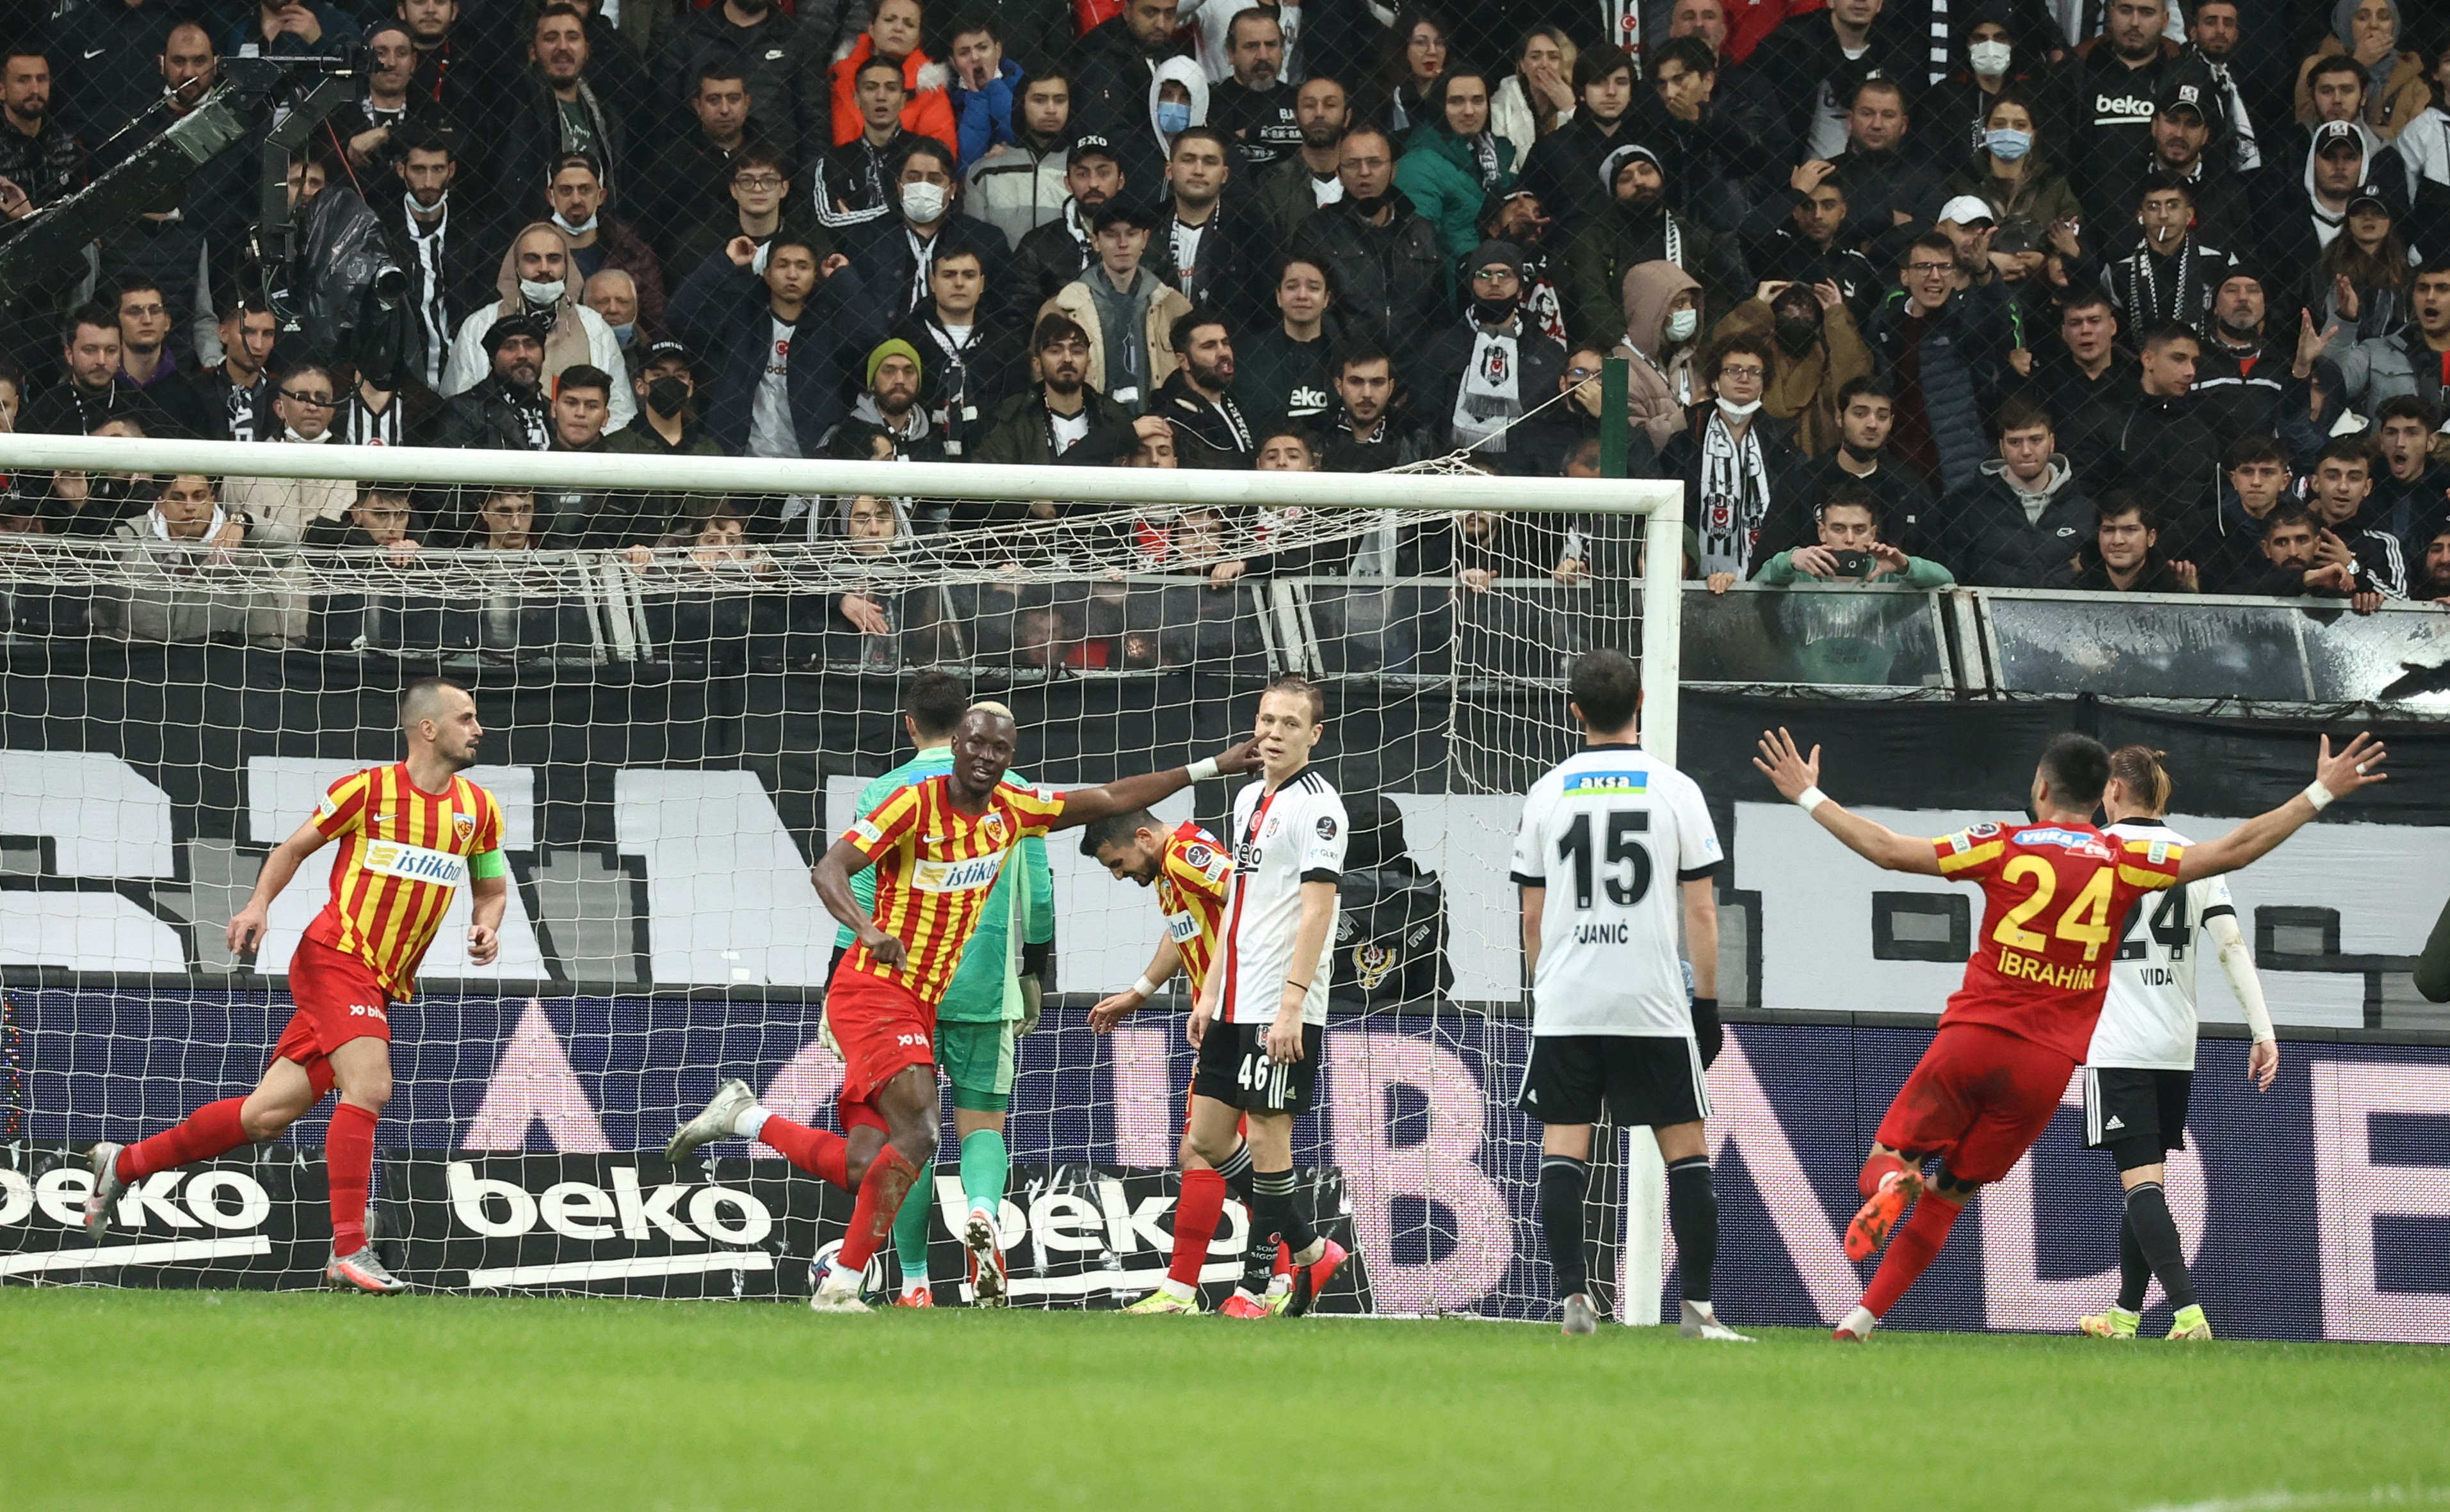 <p>Beraberlik golünden sadece 5 dakika sonra, Kayserispor'un Thiam'la sol kanattan geliştirdiği atakta Ersin'in kurtardığı top sonrası bu kez Beşiktaş sağ kanattan hızlı atağa çıktı. Güven'den pası alan Batshuayi sağdan içeri girdi ve şık hareketlerle önünü açıp çaprazdan yakın köşeye doğru yerden çok sert vurdu. Beşiktaş 5 dakikada attığı 2 golle 3-2 öne geçmiş oldu.<br></p>